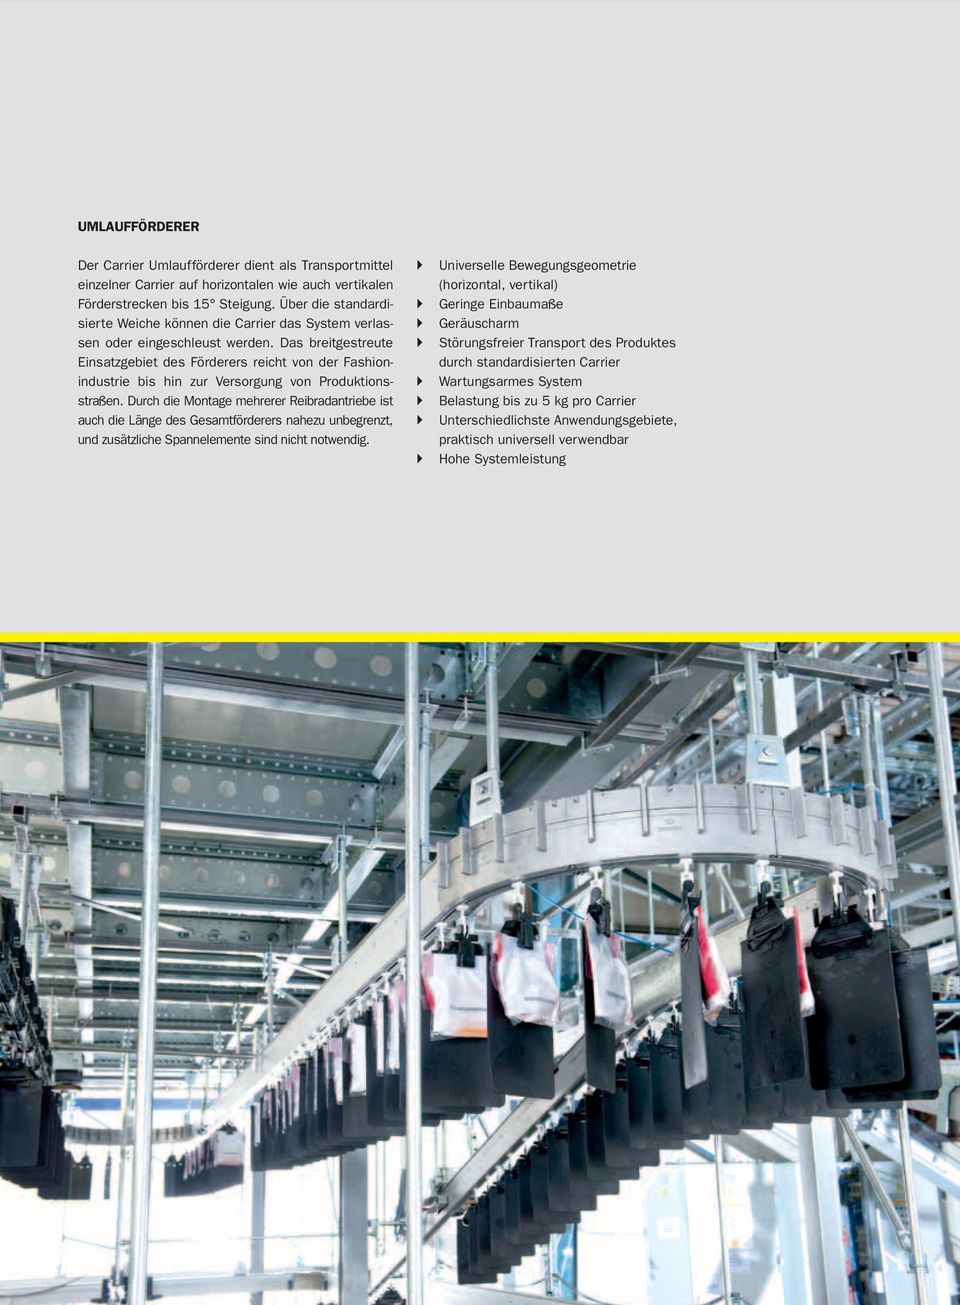 Das breitgestreute Einsatzgebiet des Förderers reicht von der Fashionindustrie bis hin zur Versorgung von Produktionsstraßen.